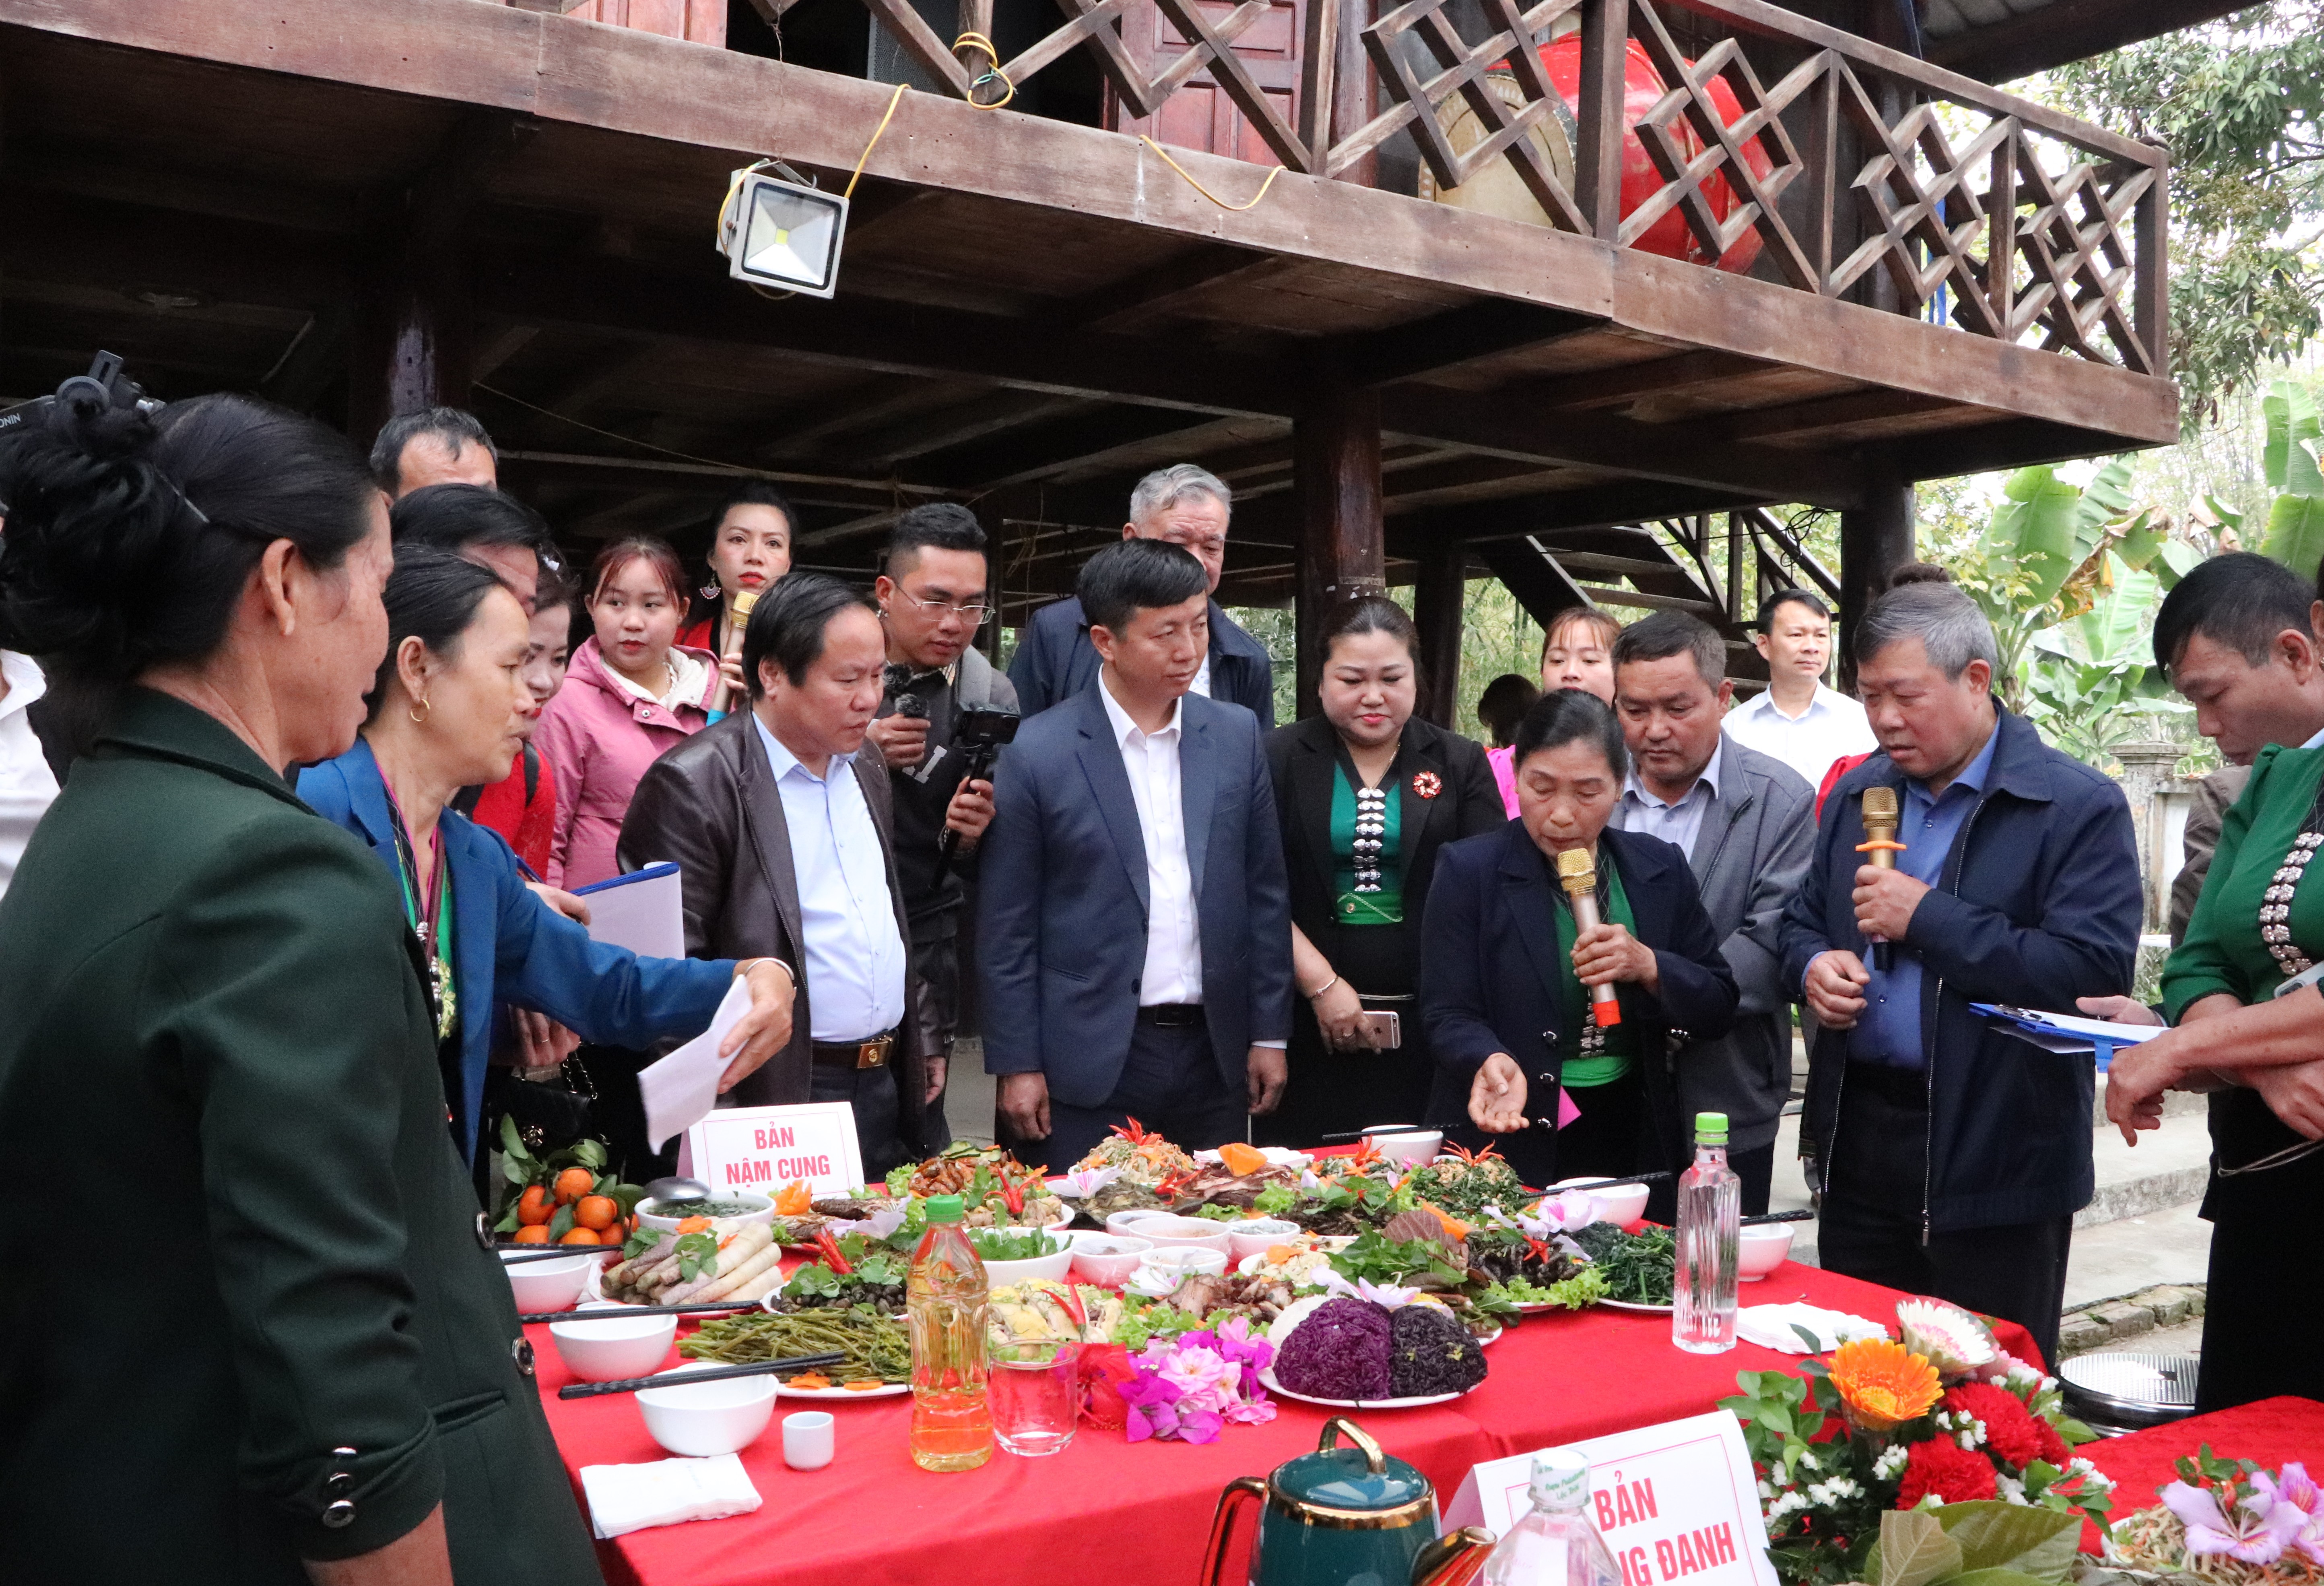 Các đồng chí lãnh đạo tỉnh, huyện Phong Thổ nghe đại diện bản Nậm Cung (xã Mường So) giới thiệu về các món ăn dự thi tại lễ hội Nàng Han